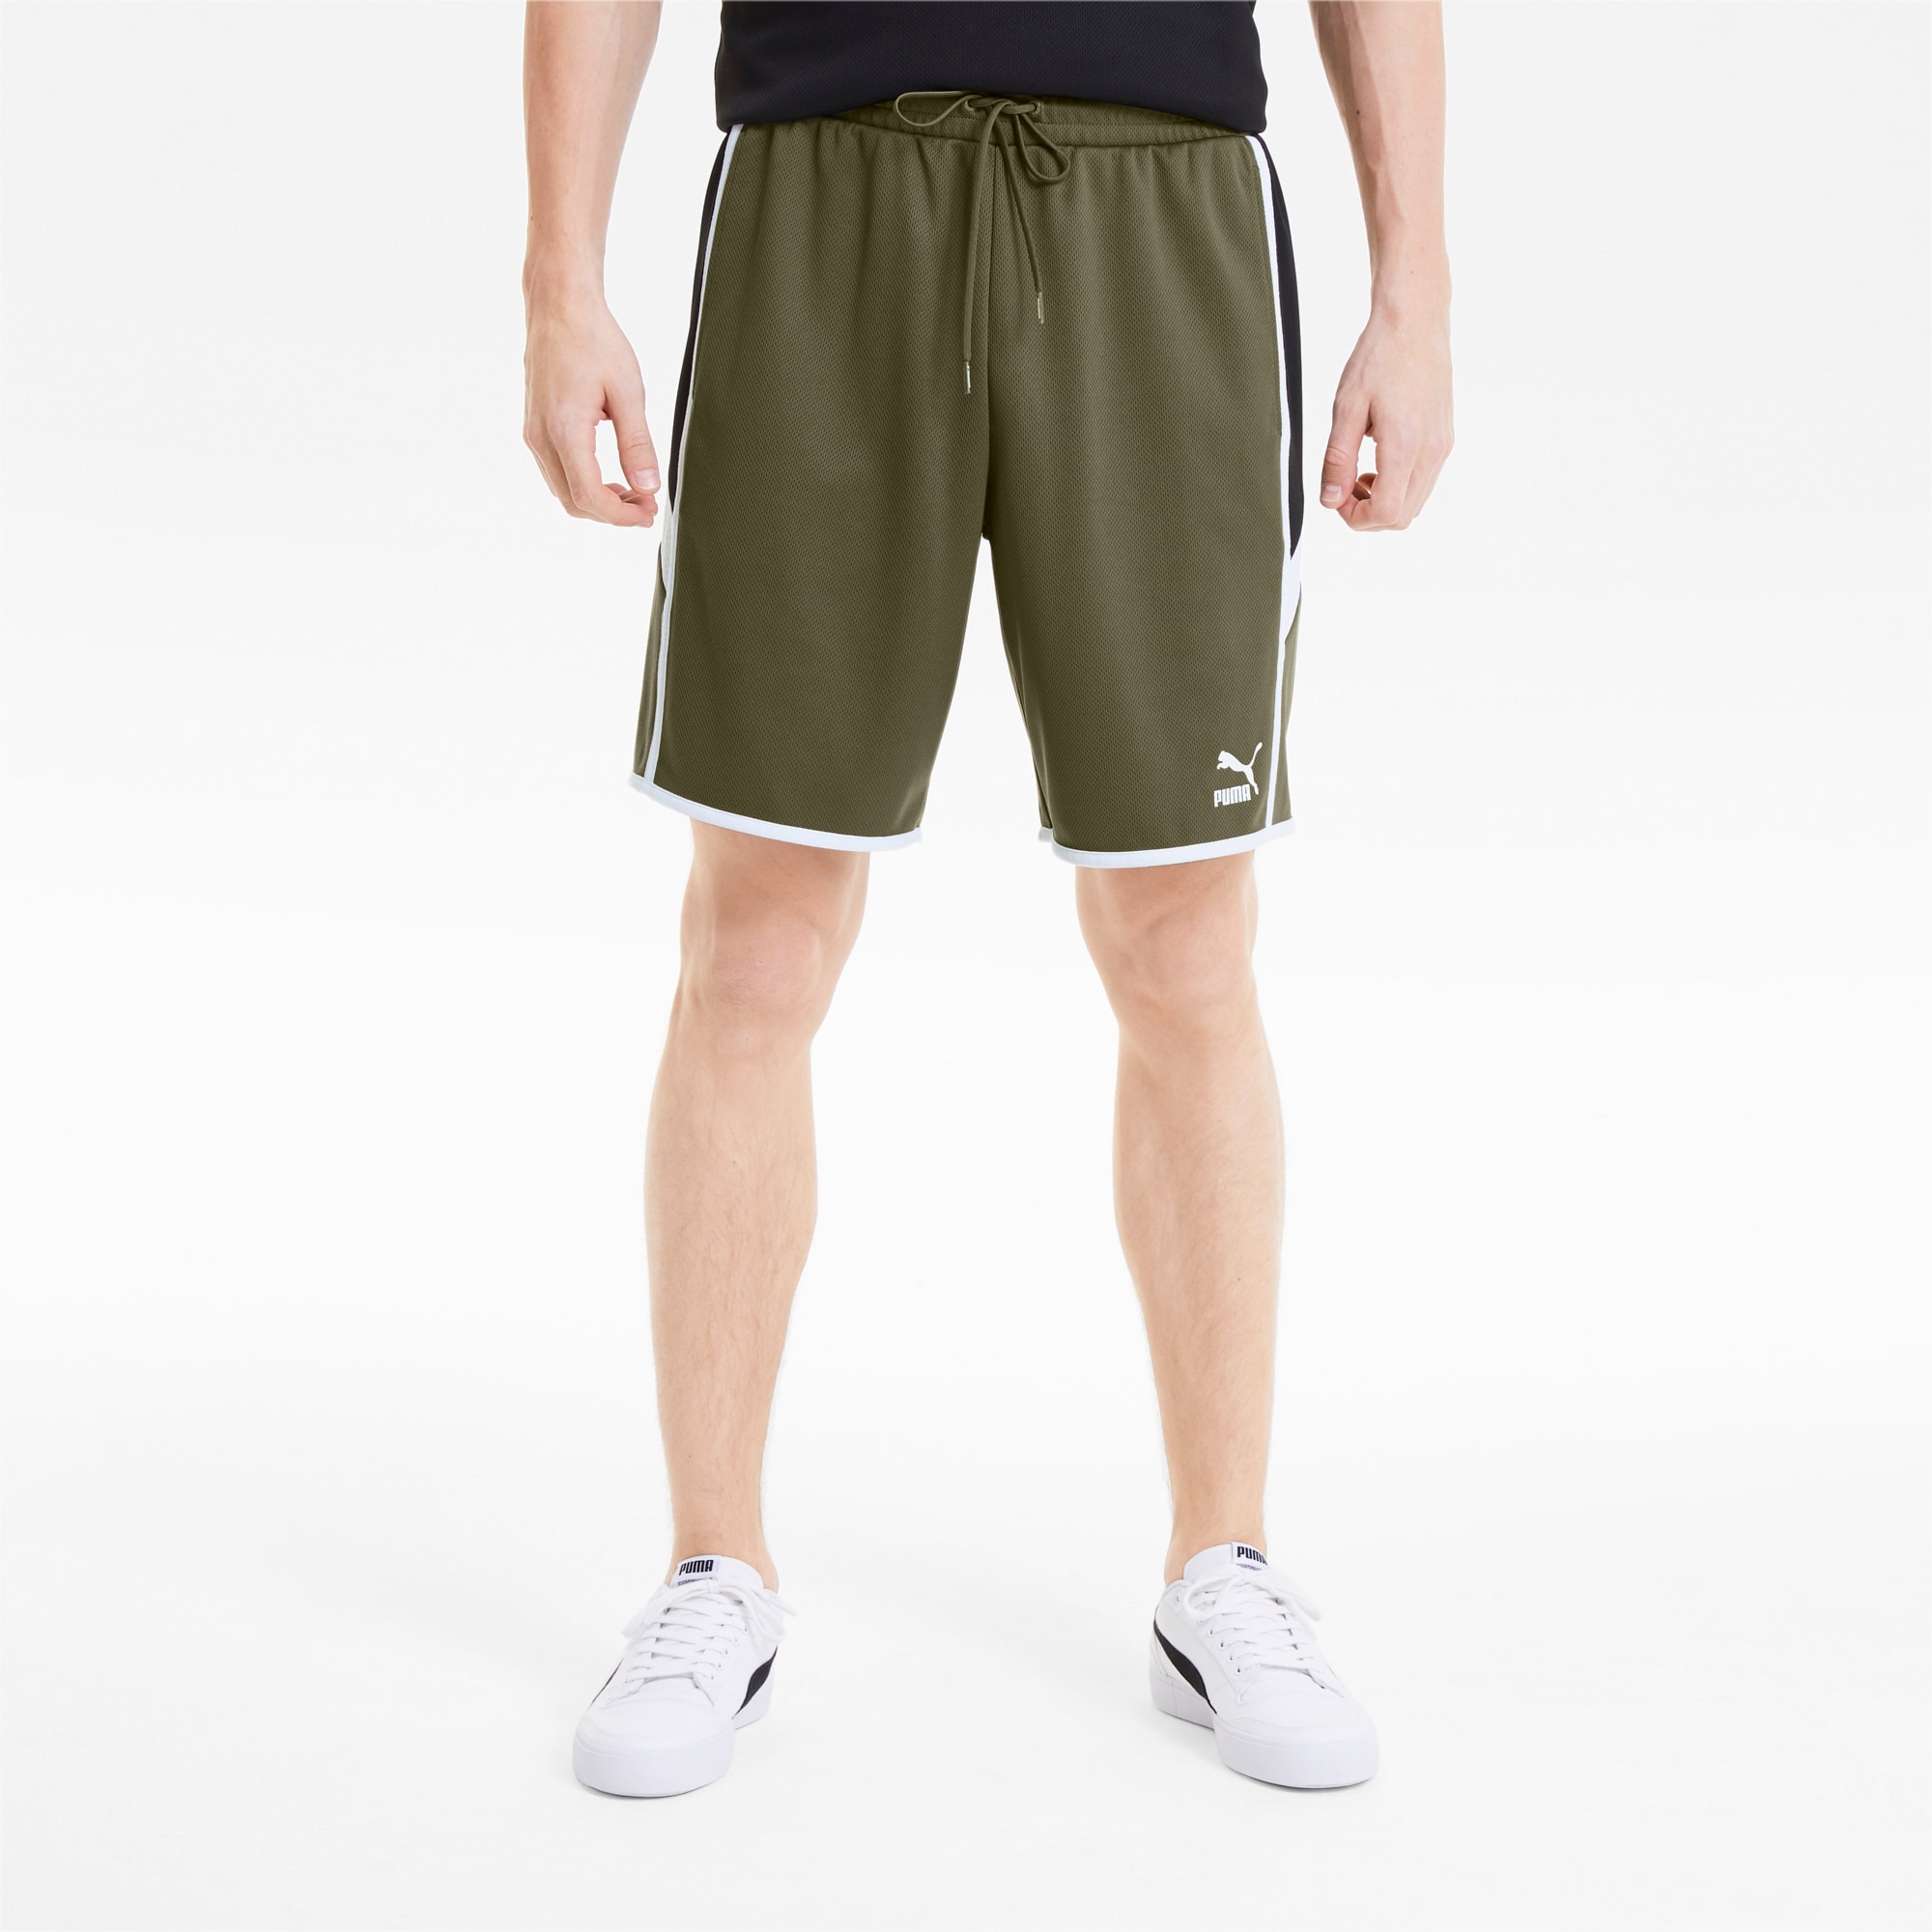 puma khaki shorts